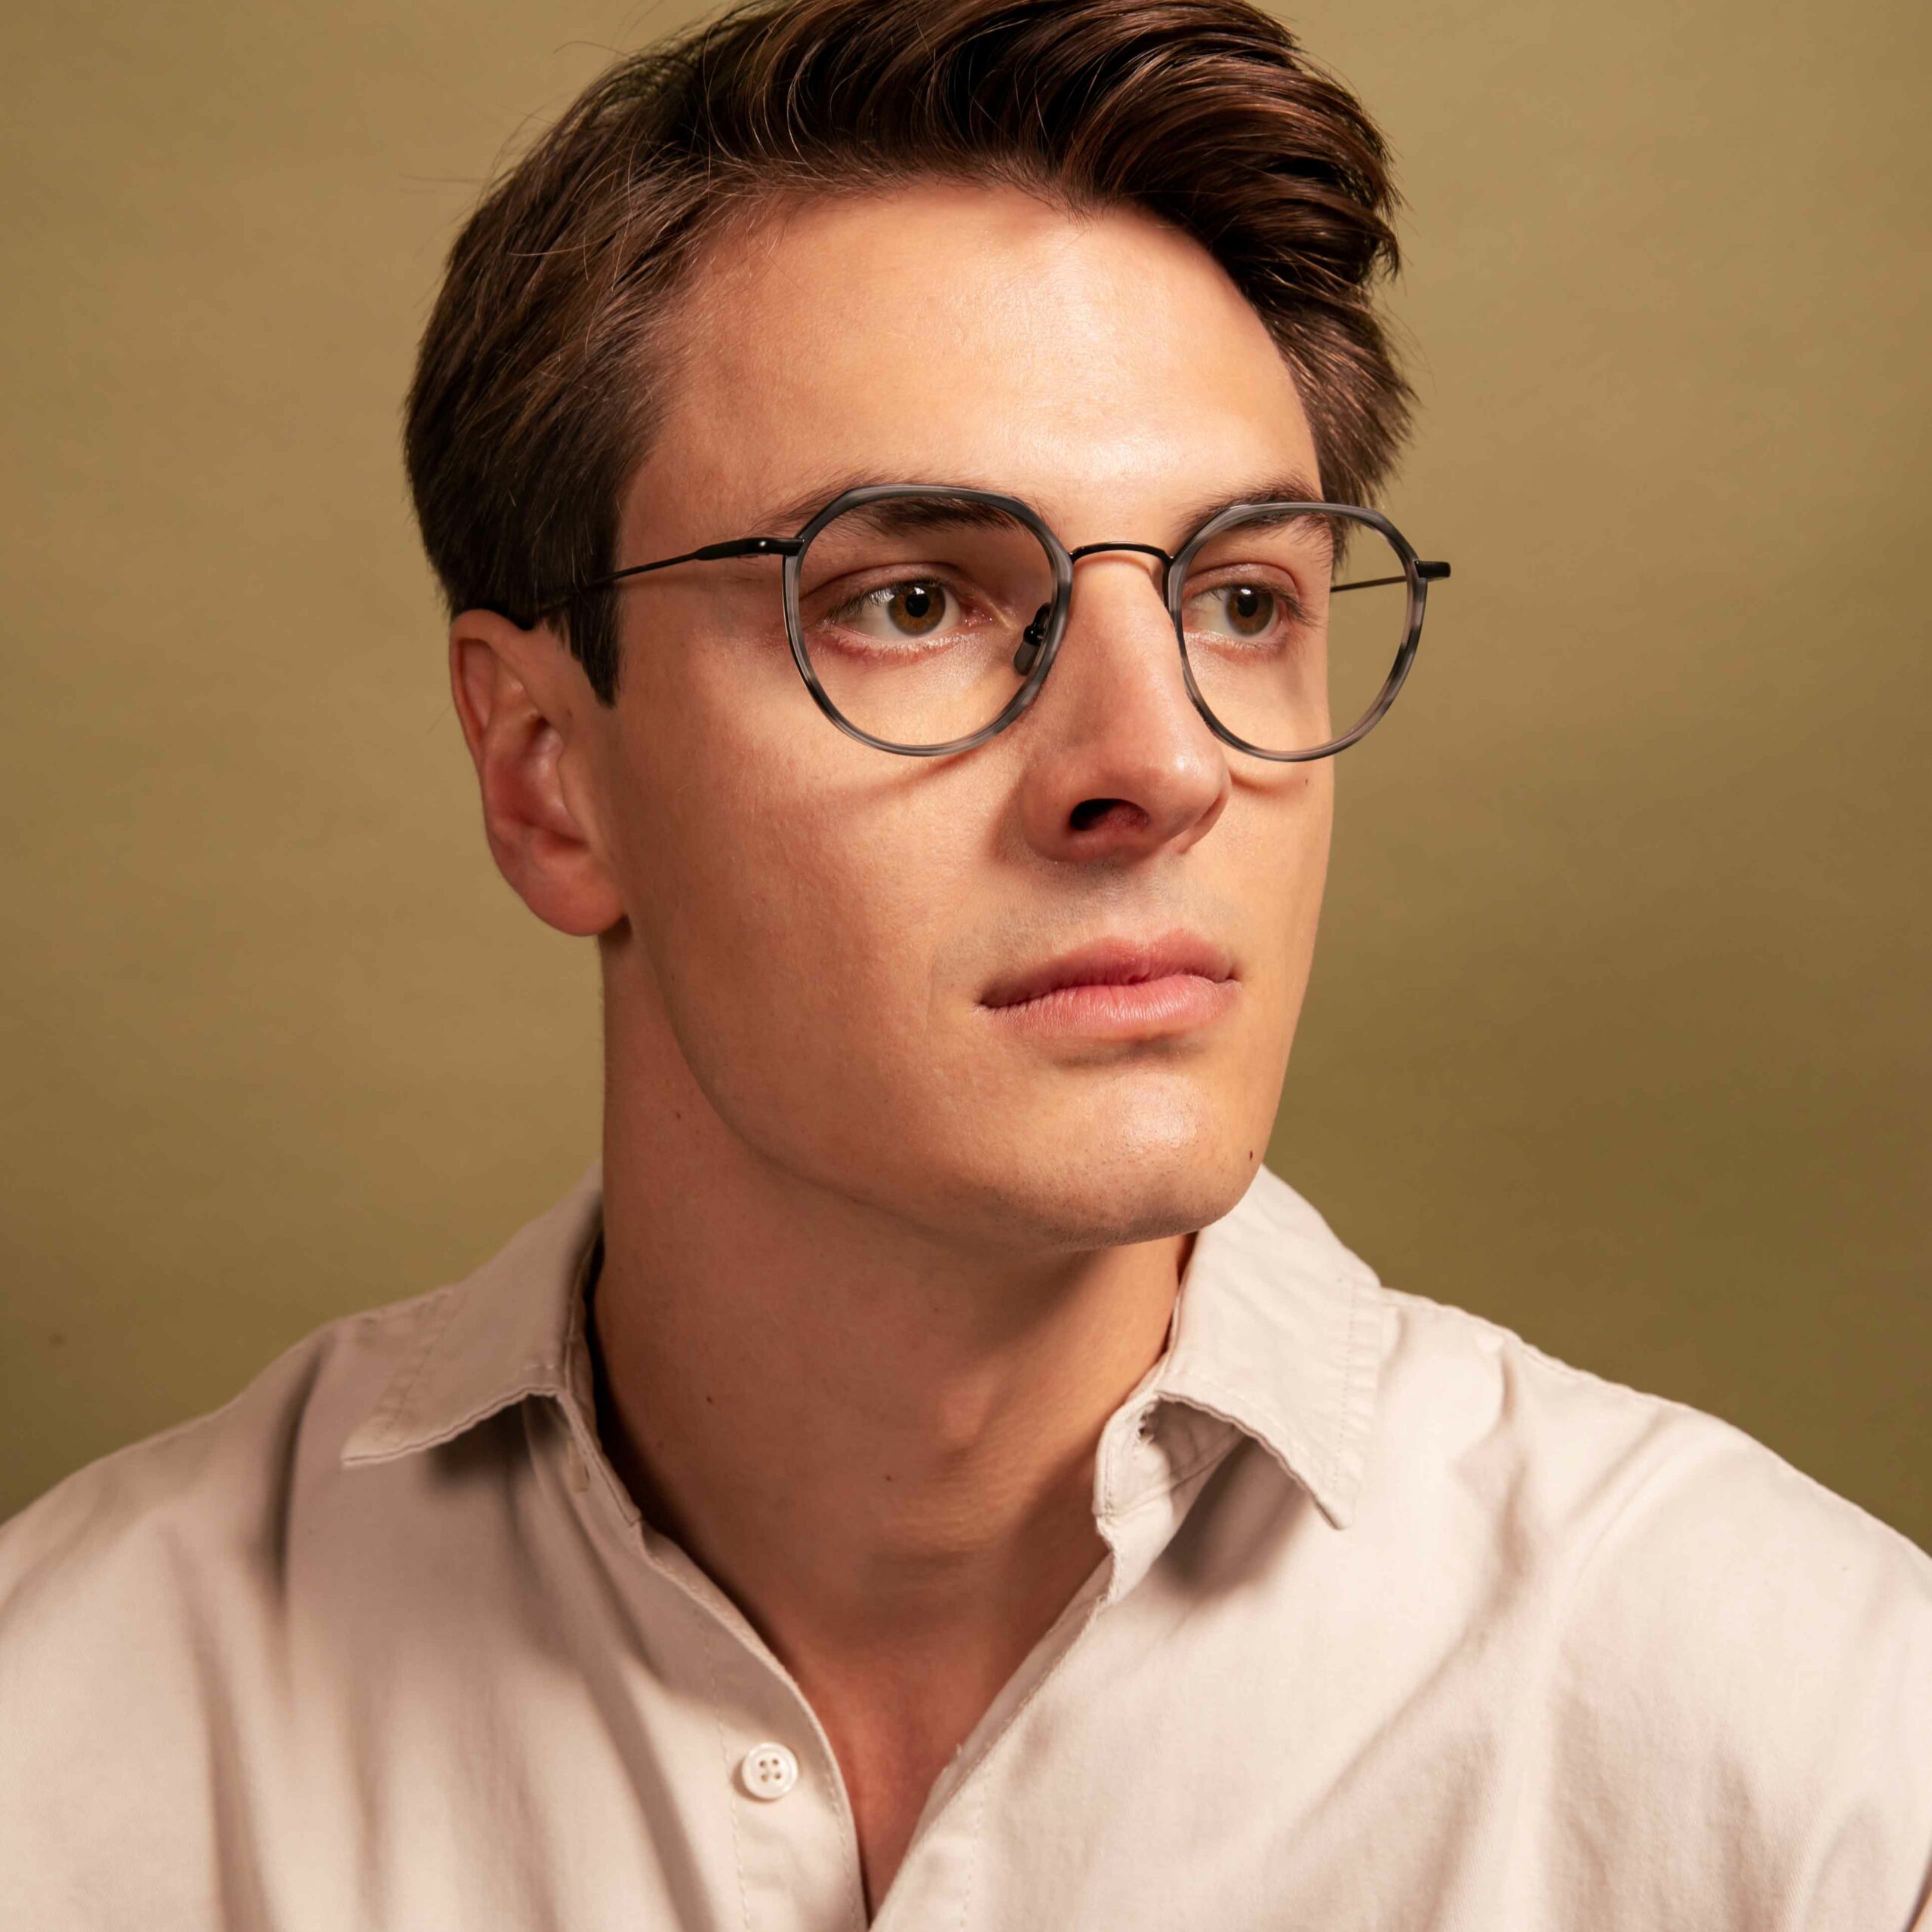 Bril kopen? Klassevolle brilmonturen voor jong en oud - Optiek Lammerant